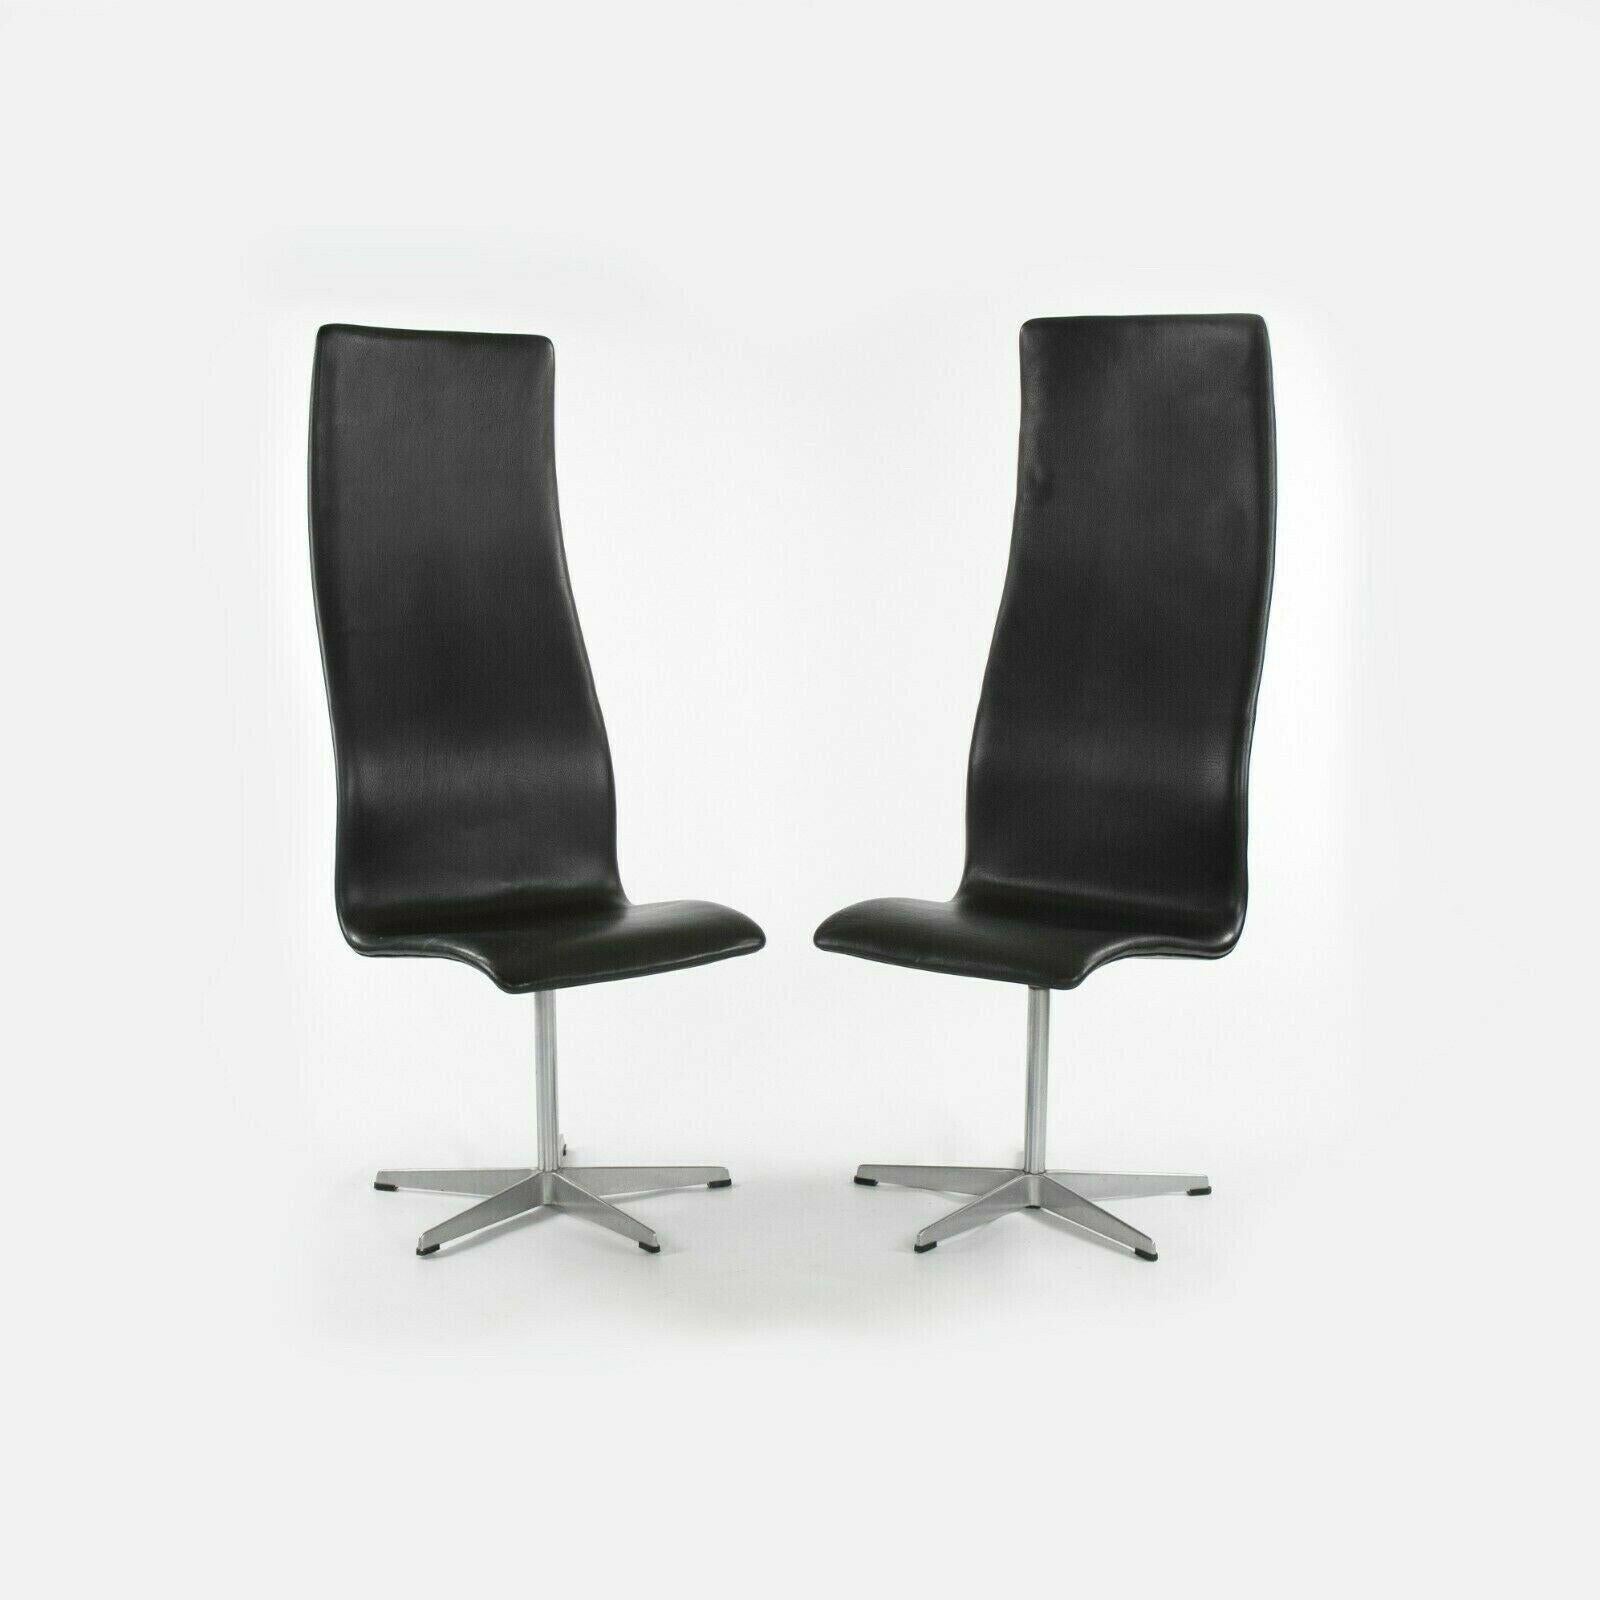 Zum Verkauf steht ein originaler Satz von vier High Oxford Esszimmerstühlen, entworfen vom Architekten Arne Jacobsen und hergestellt von Fritz Hansen in Dänemark. Es handelt sich um frühe und originale Exemplare aus den 1960er Jahren. Einer von